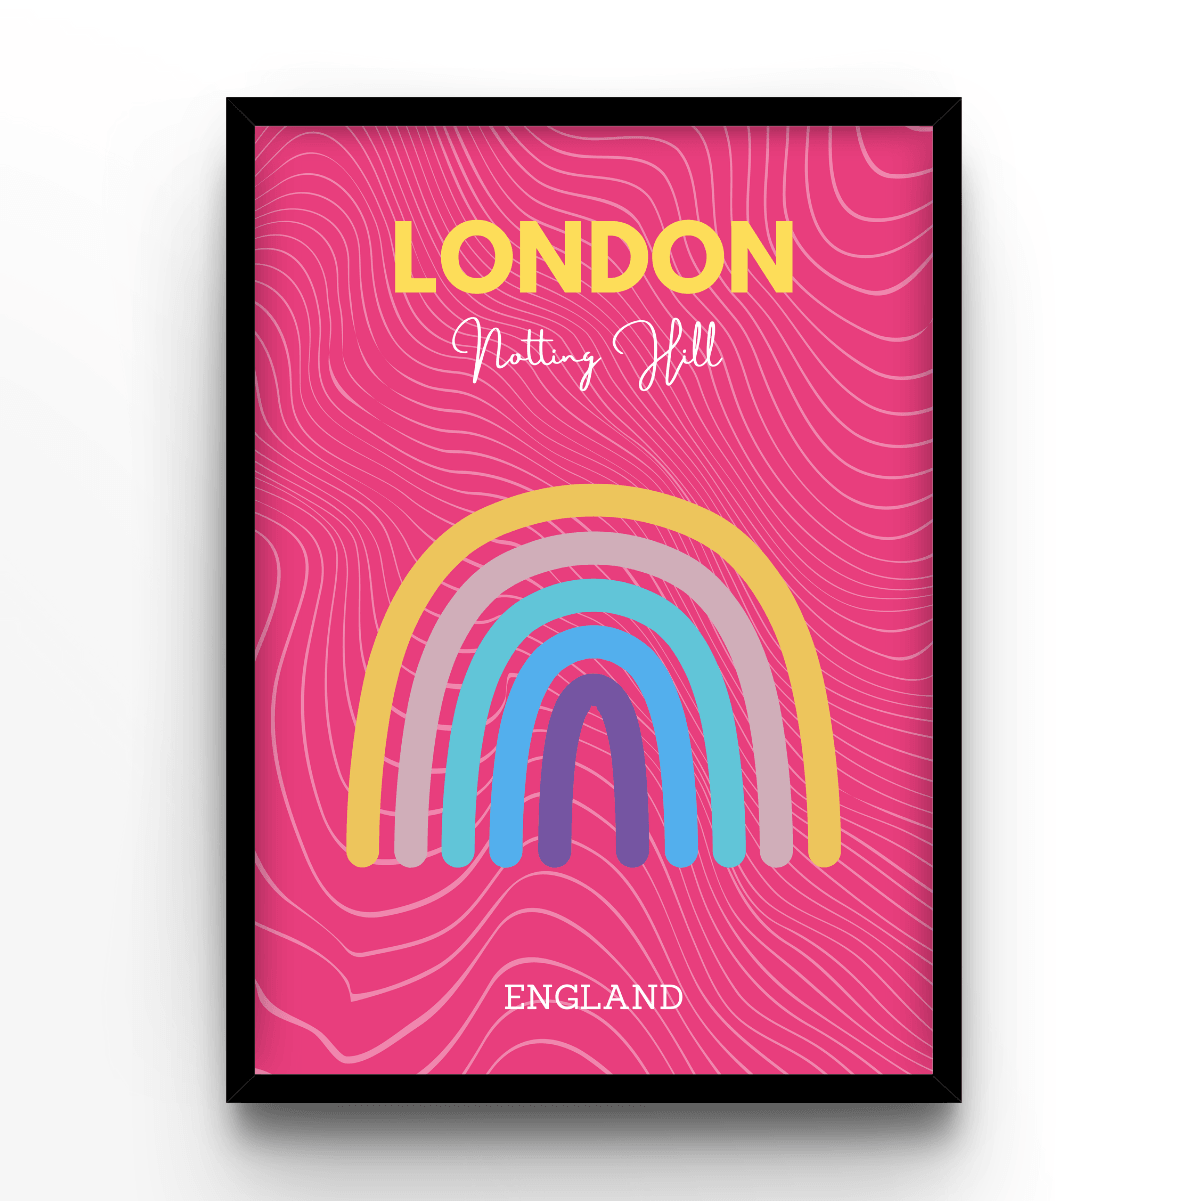 London - A4, A3, A2 Posters Base - Poster Print Shop / Art Prints / PostersBase